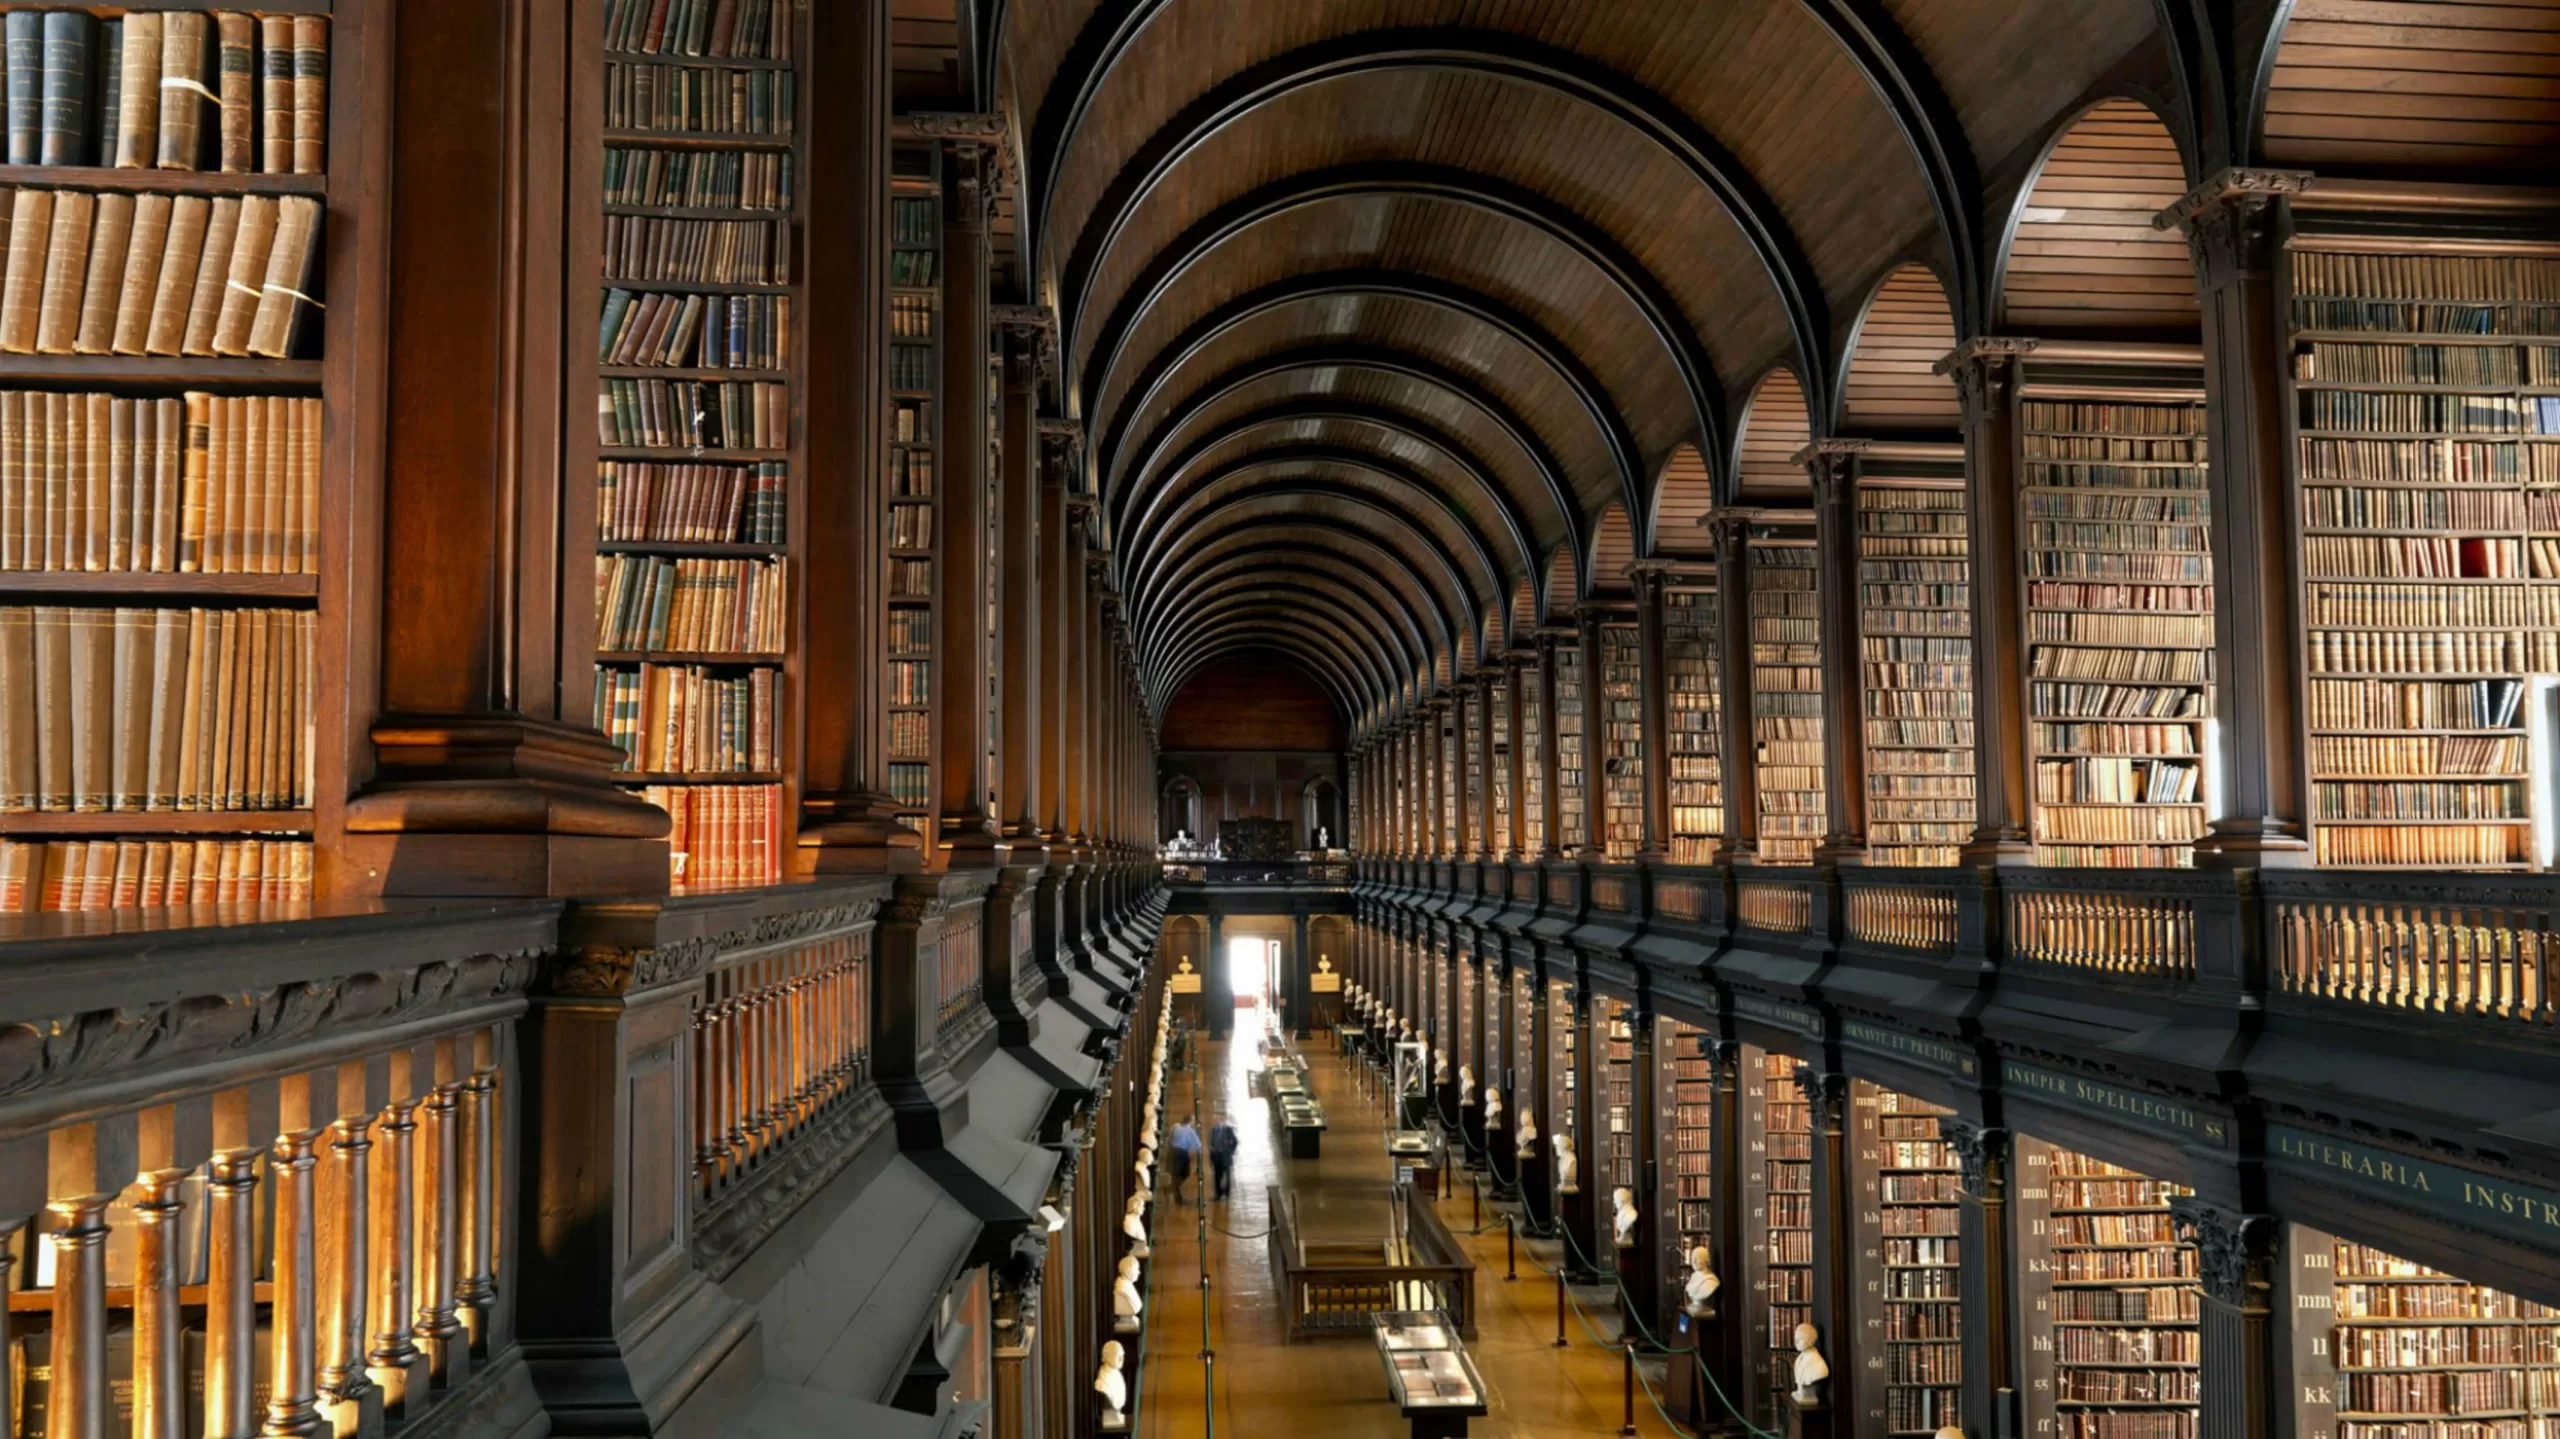 Математическая библиотека с. Библиотека Тринити-колледжа в Дублине. Библиотека Тринити-колледжа, Дублин, Ирландия. Тринити-колледж в Дублине, Ирландия. Библиотека Тринити-колледжа в Кембридже.